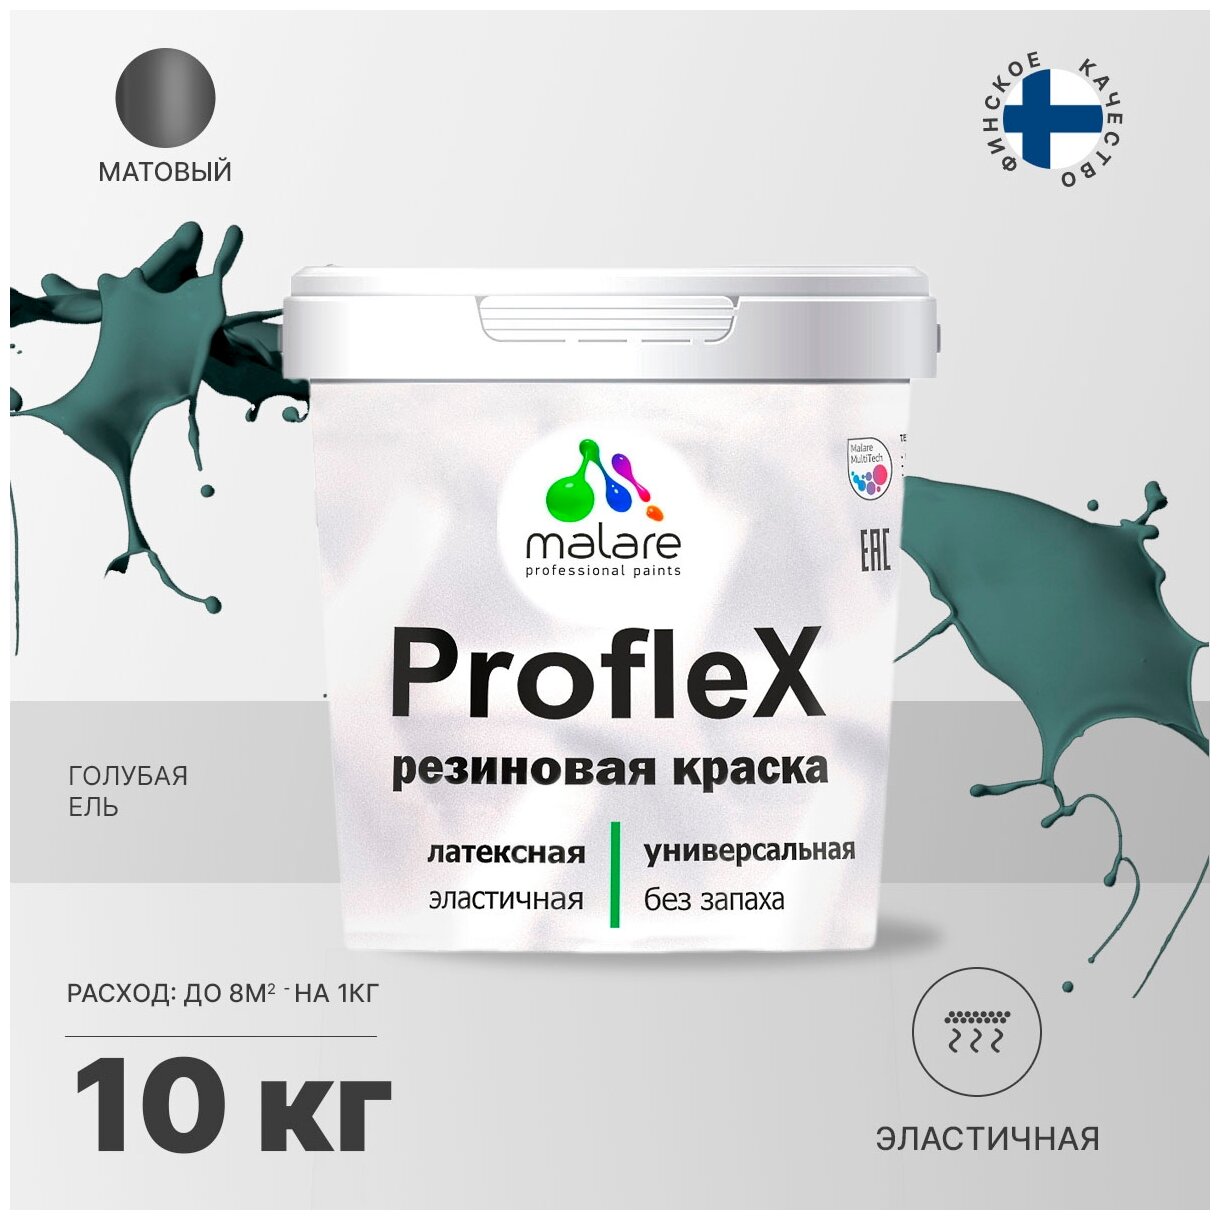   Malare ProfleX  , , , , , ,  , ,  , ,  , 10 .